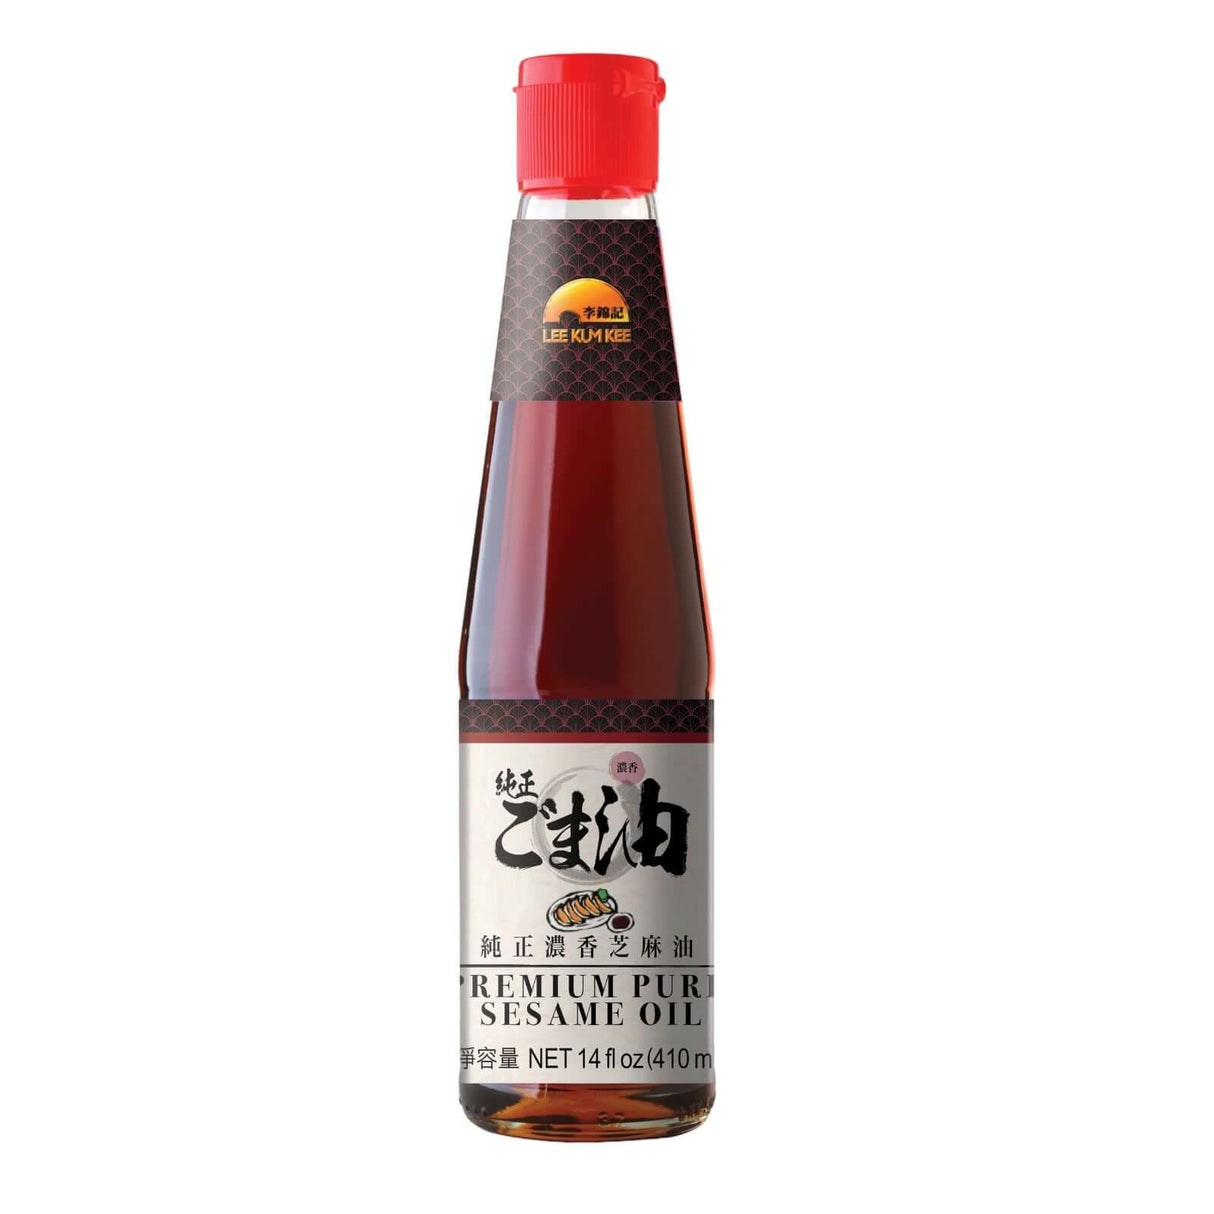 Lee Kum Kee Premium Pure Sesame Oil